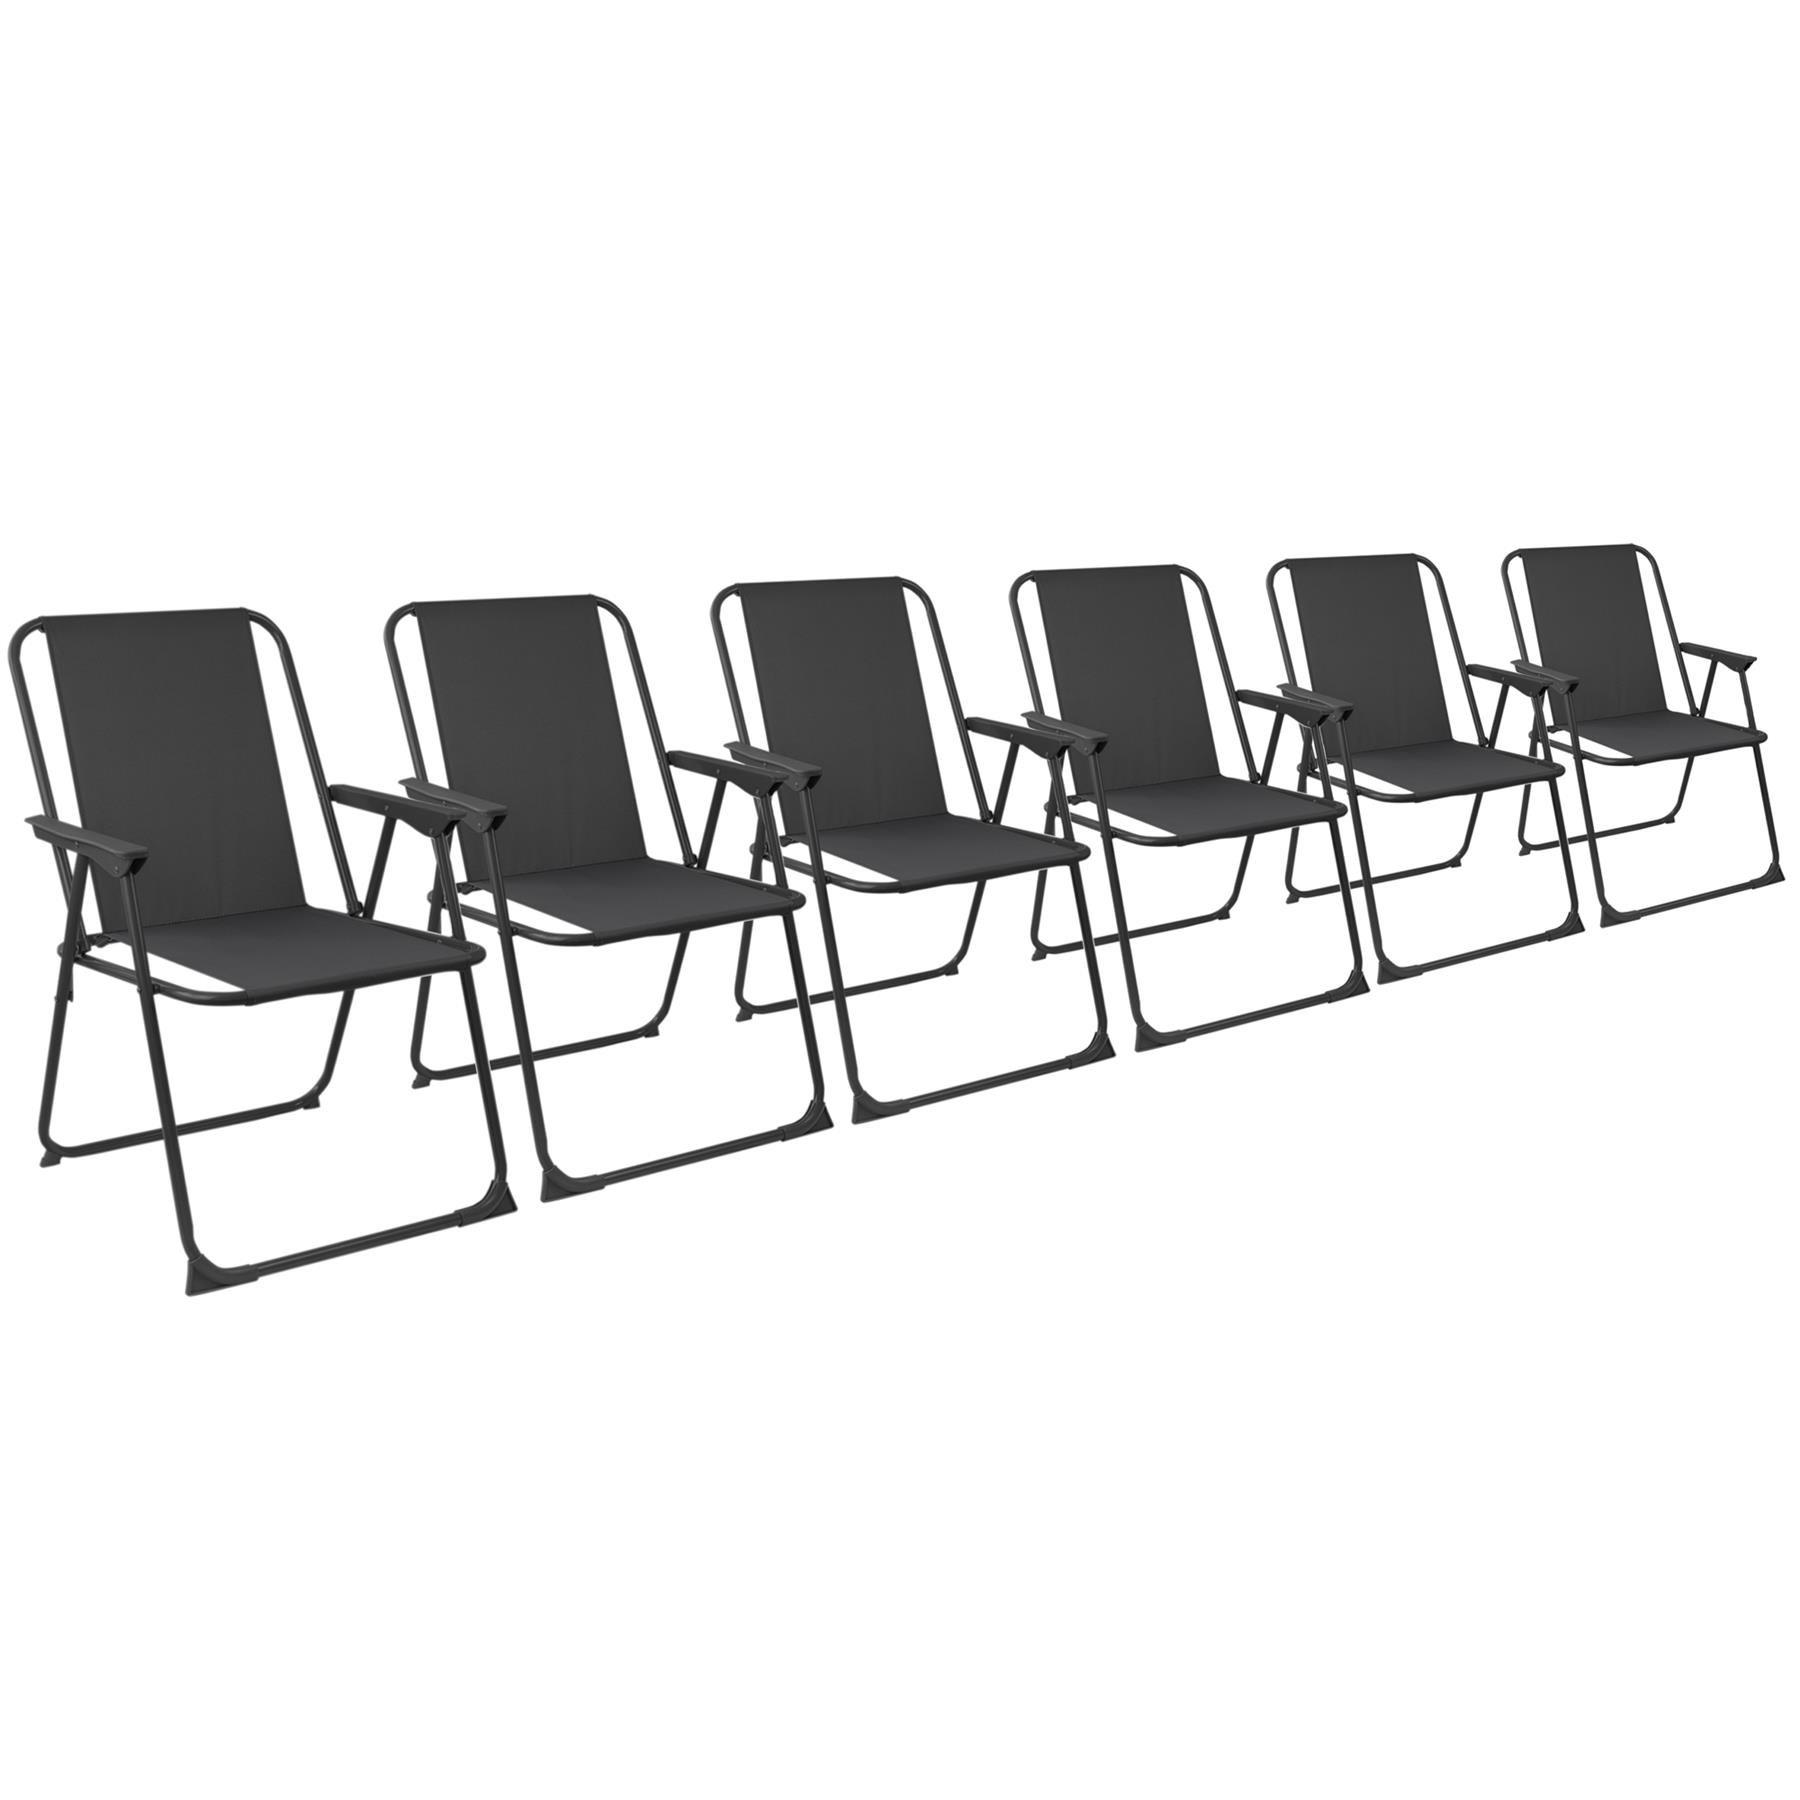 Folding Beach Chair black